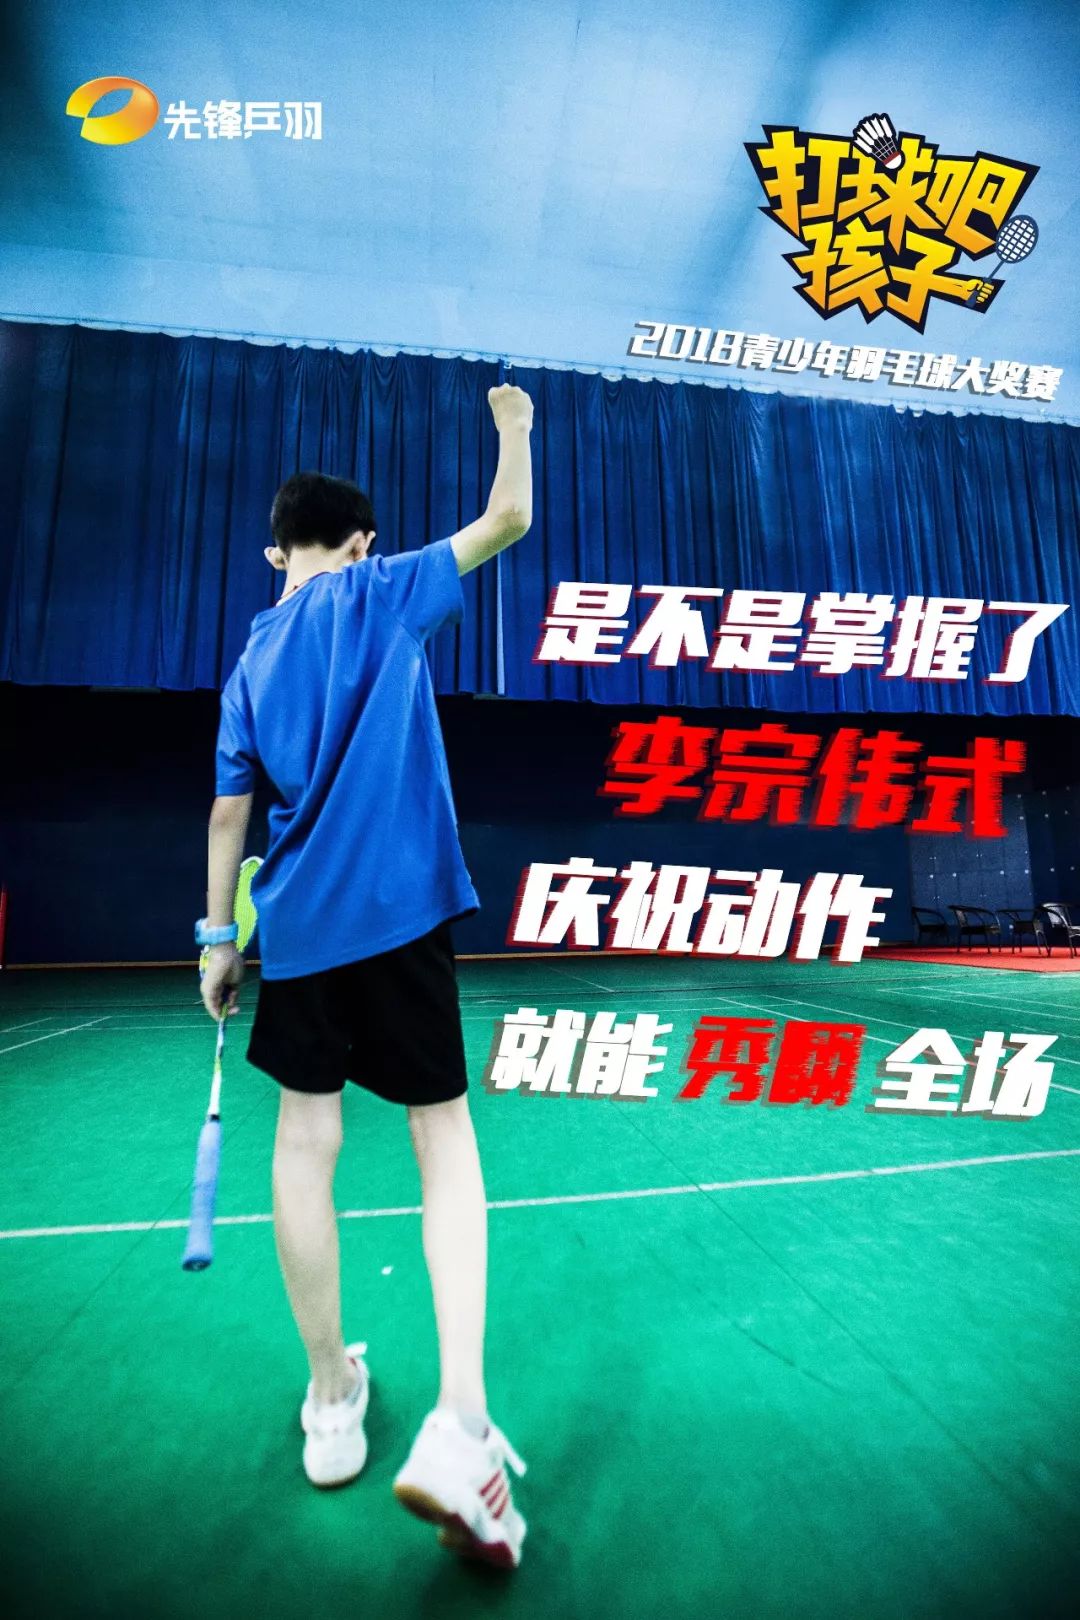 孩子青少年羽毛球大奖赛章程01主办单位:湖南电视台先锋乒羽频道